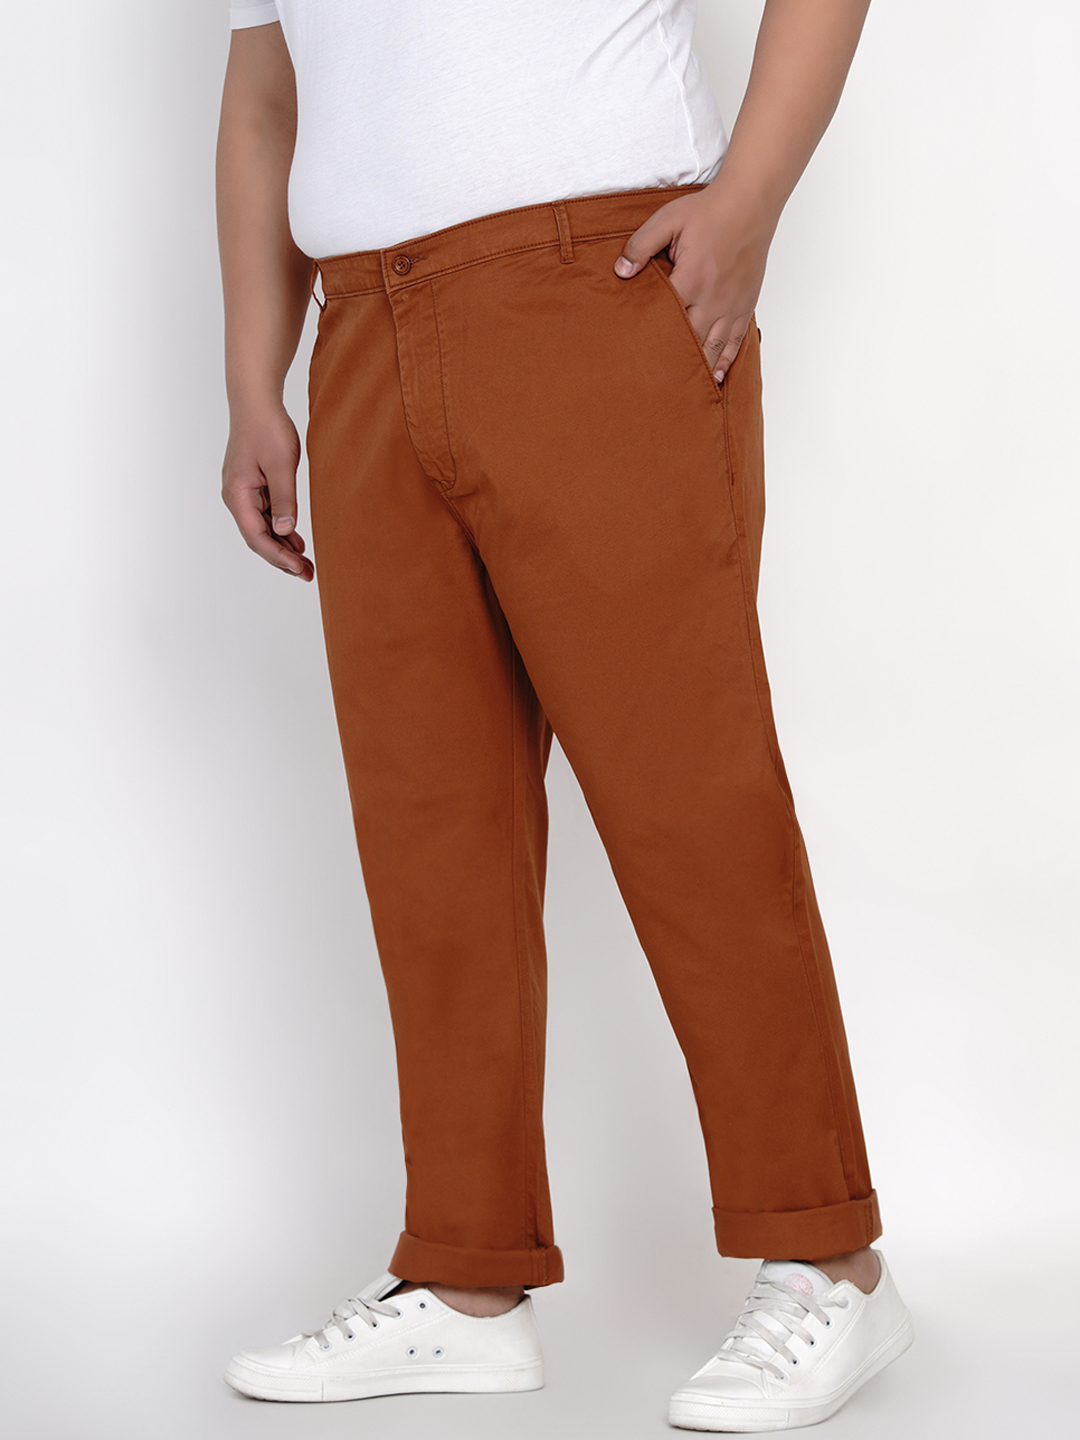 bottomwear/trousers/JPTR2161F/jptr2161f-4.jpg